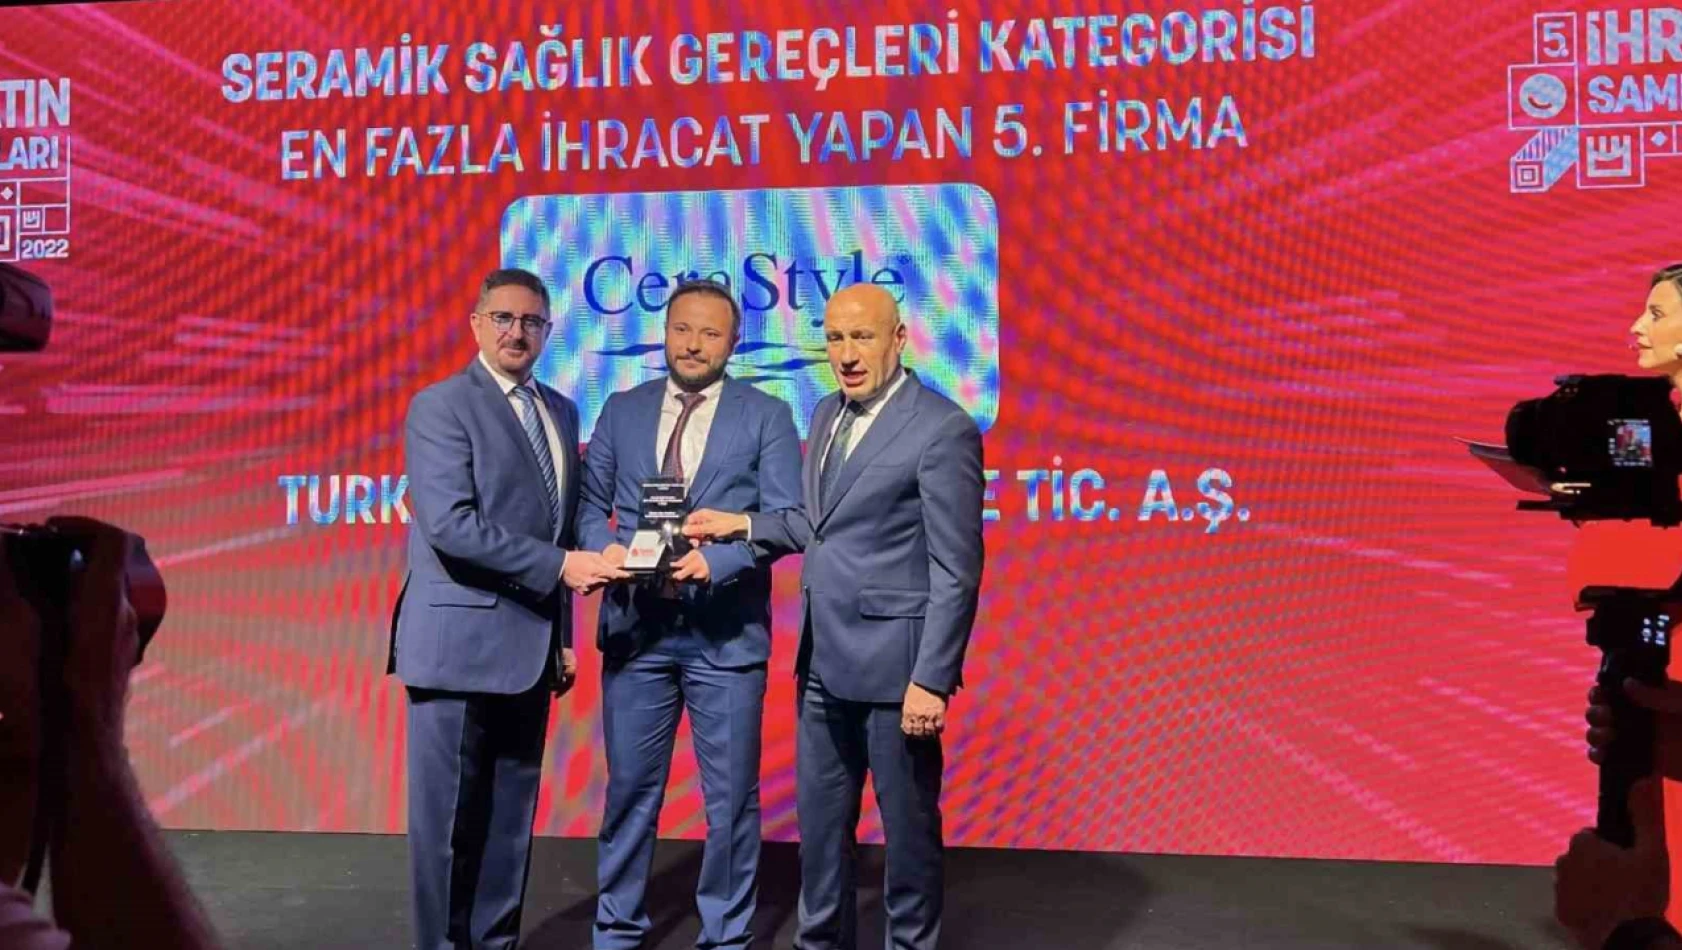 Kayseri'de kurulan Turkuaz Seramik ödüle layık görüldü